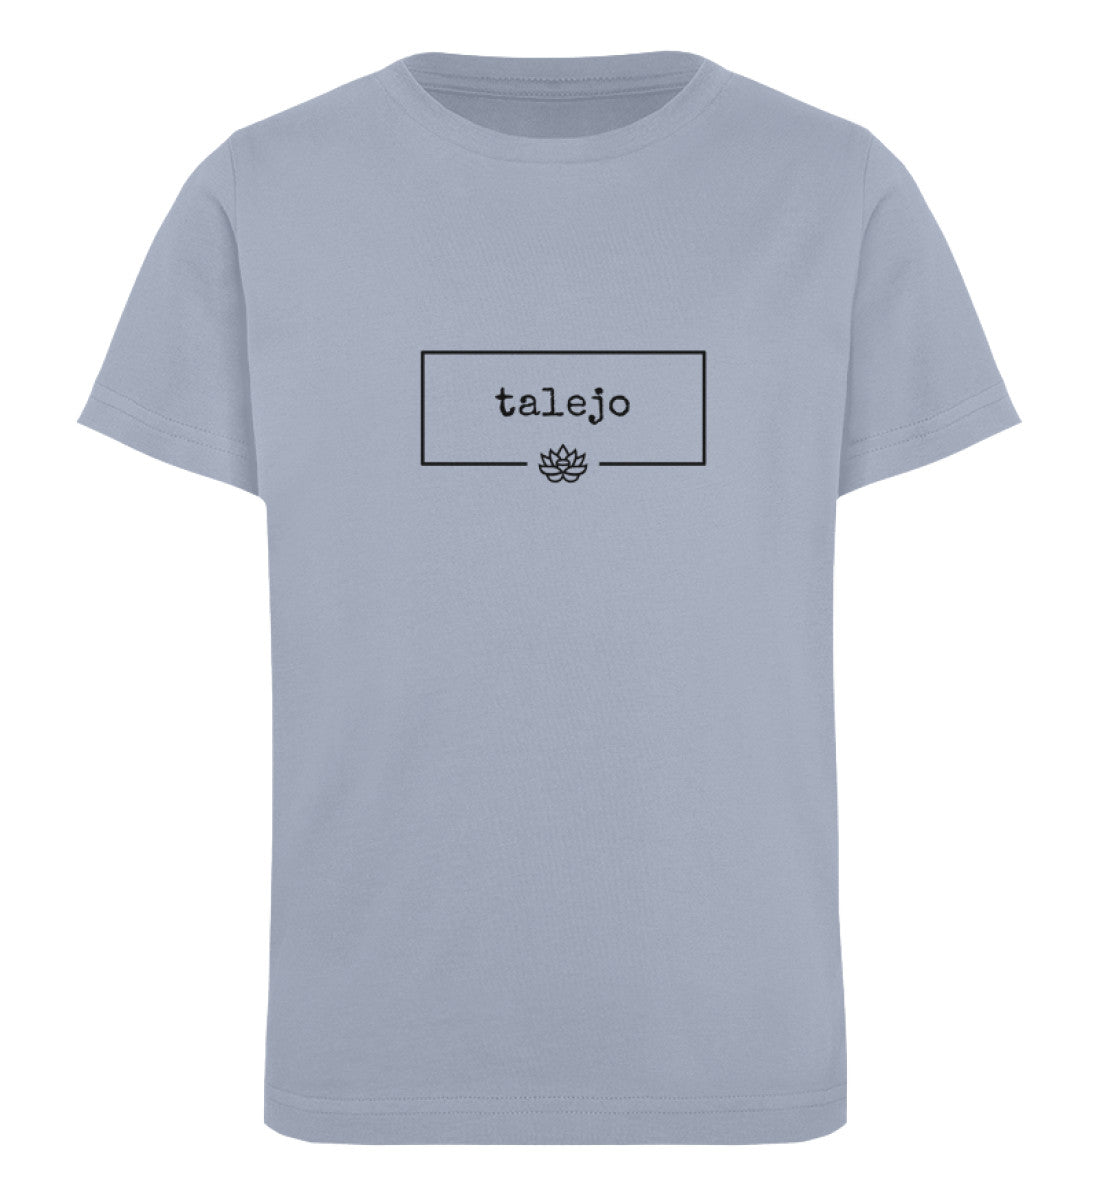 talejo Kids Organic Shirt - talejo